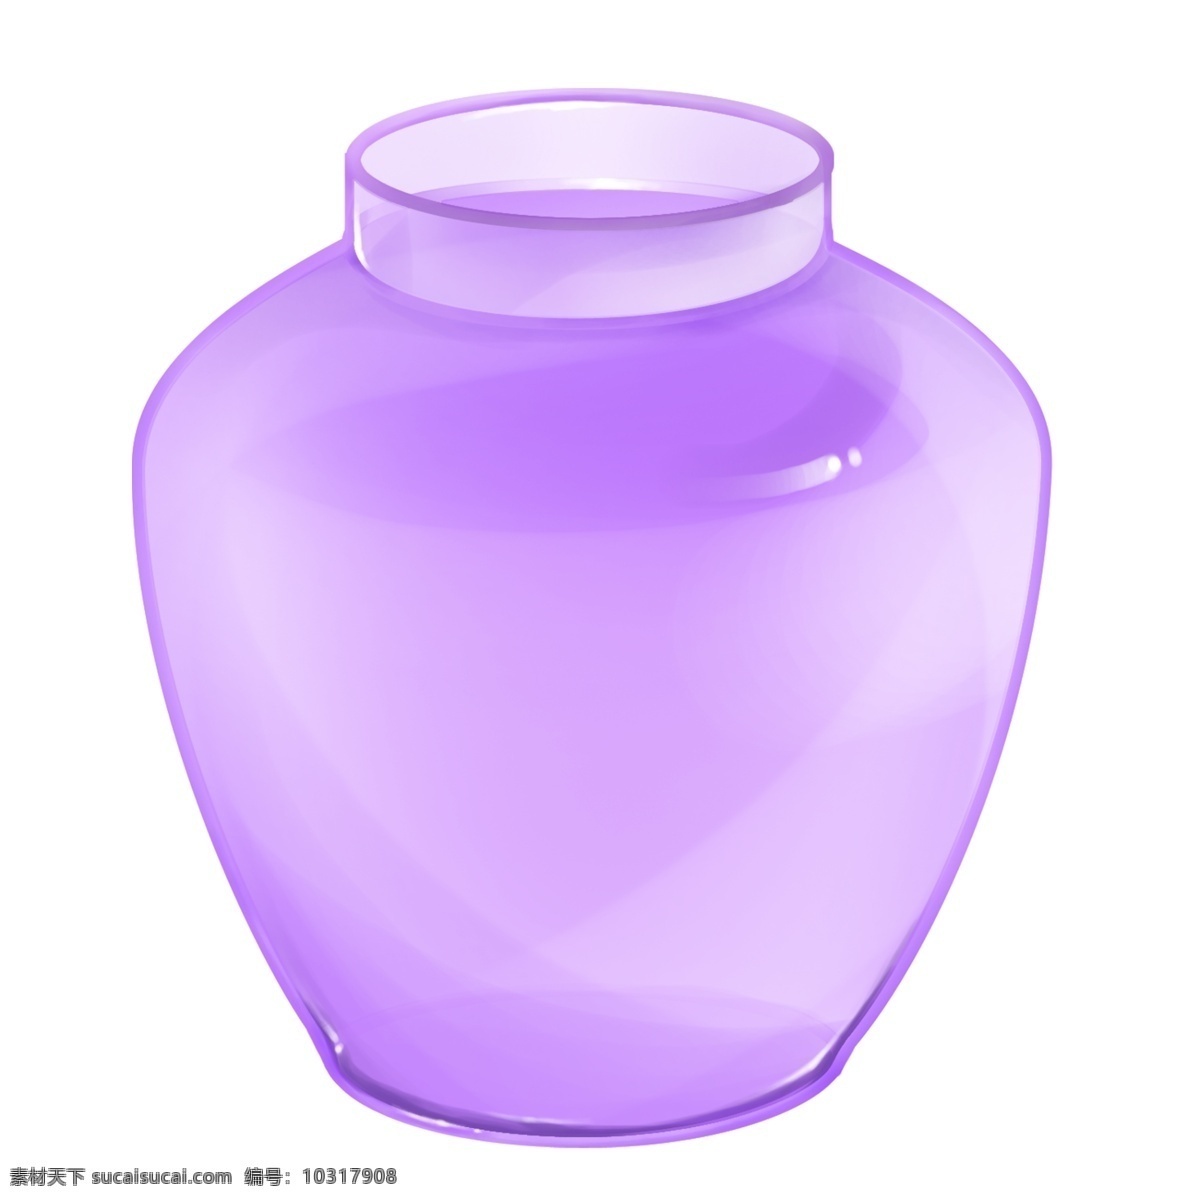 紫色玻璃瓶子 玻璃瓶子 玻璃瓶 紫色瓶子